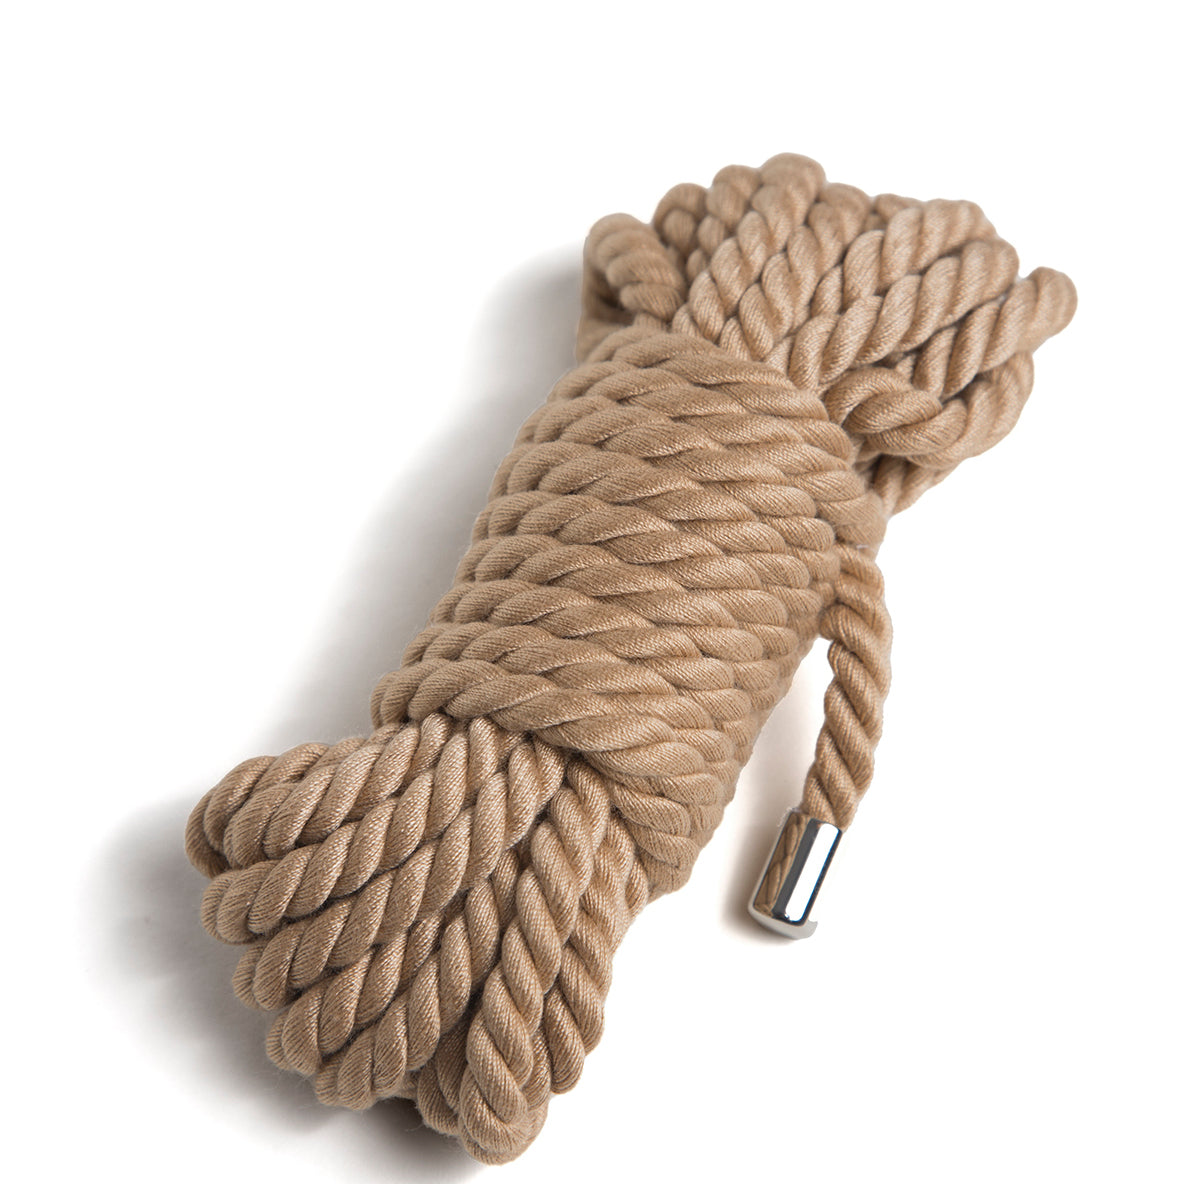 bondage rope